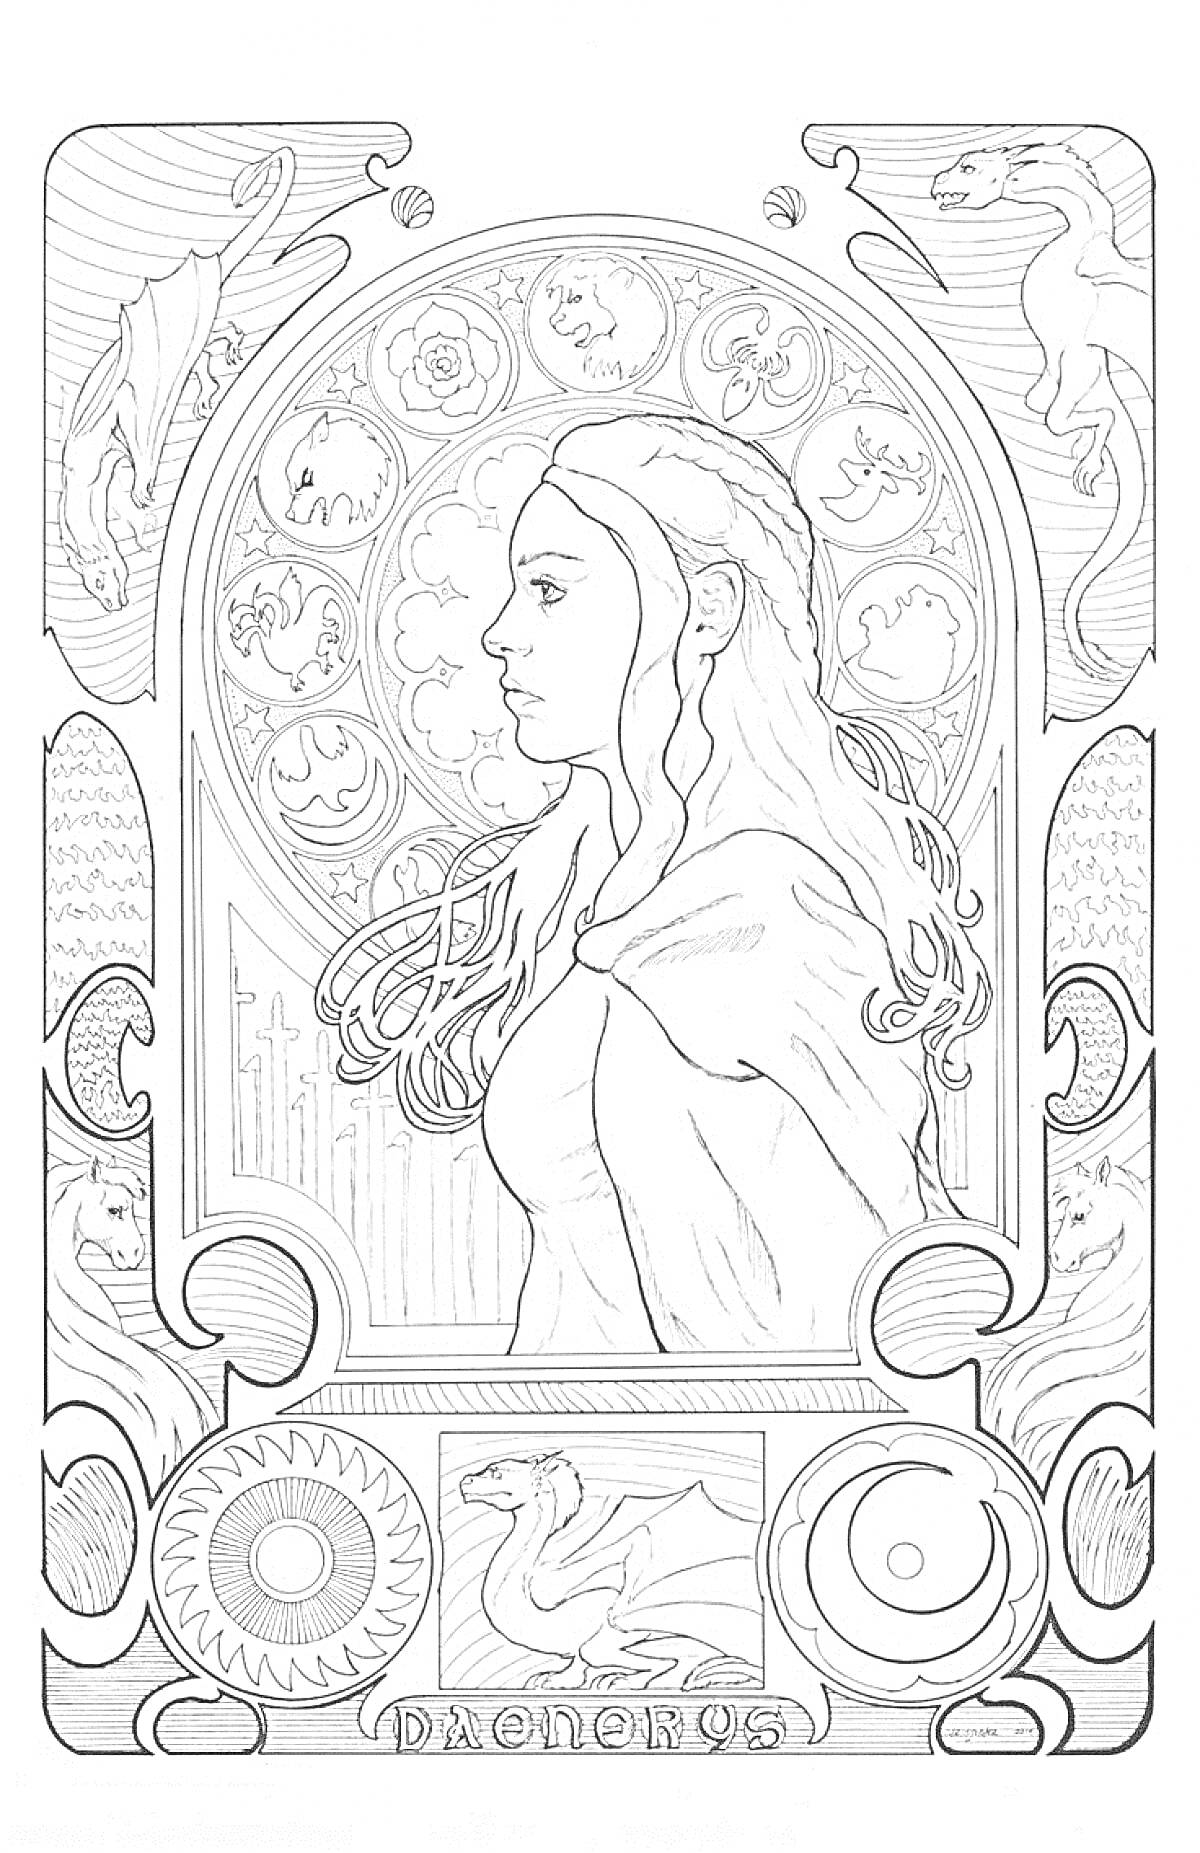 Портрет девушки из Игры престолов со шлемом, драконами и круговыми орнаментами на заднем плане, надпись DAENERYS